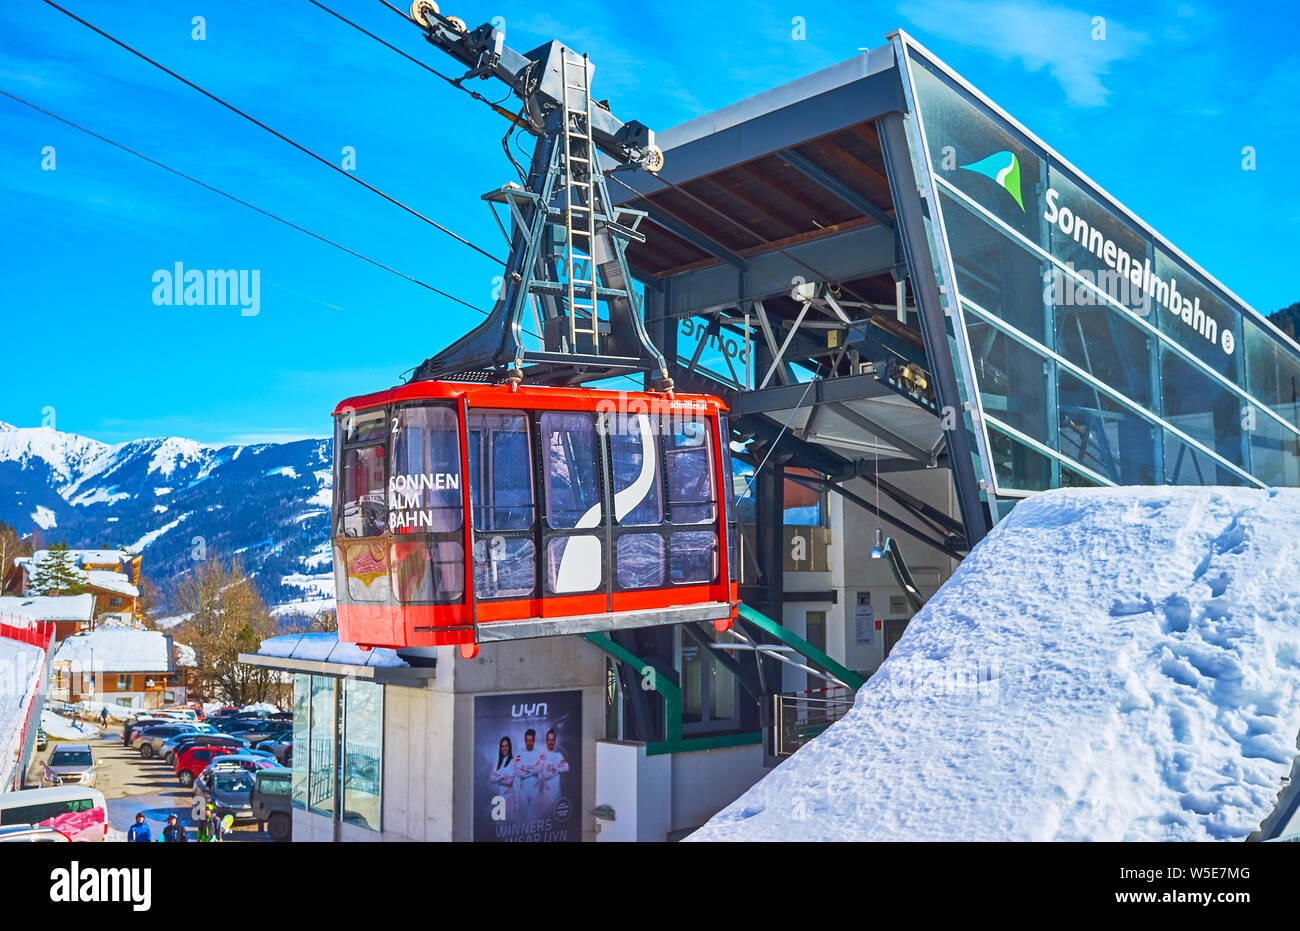 ZELL AM SEE, Austria - 28 febbraio 2019: il moderno tram rosso di Sonnenalmbahn sollevamento di aria in corrispondenza della sua stazione inferiore, il 28 febbraio a Zell am See Foto Stock